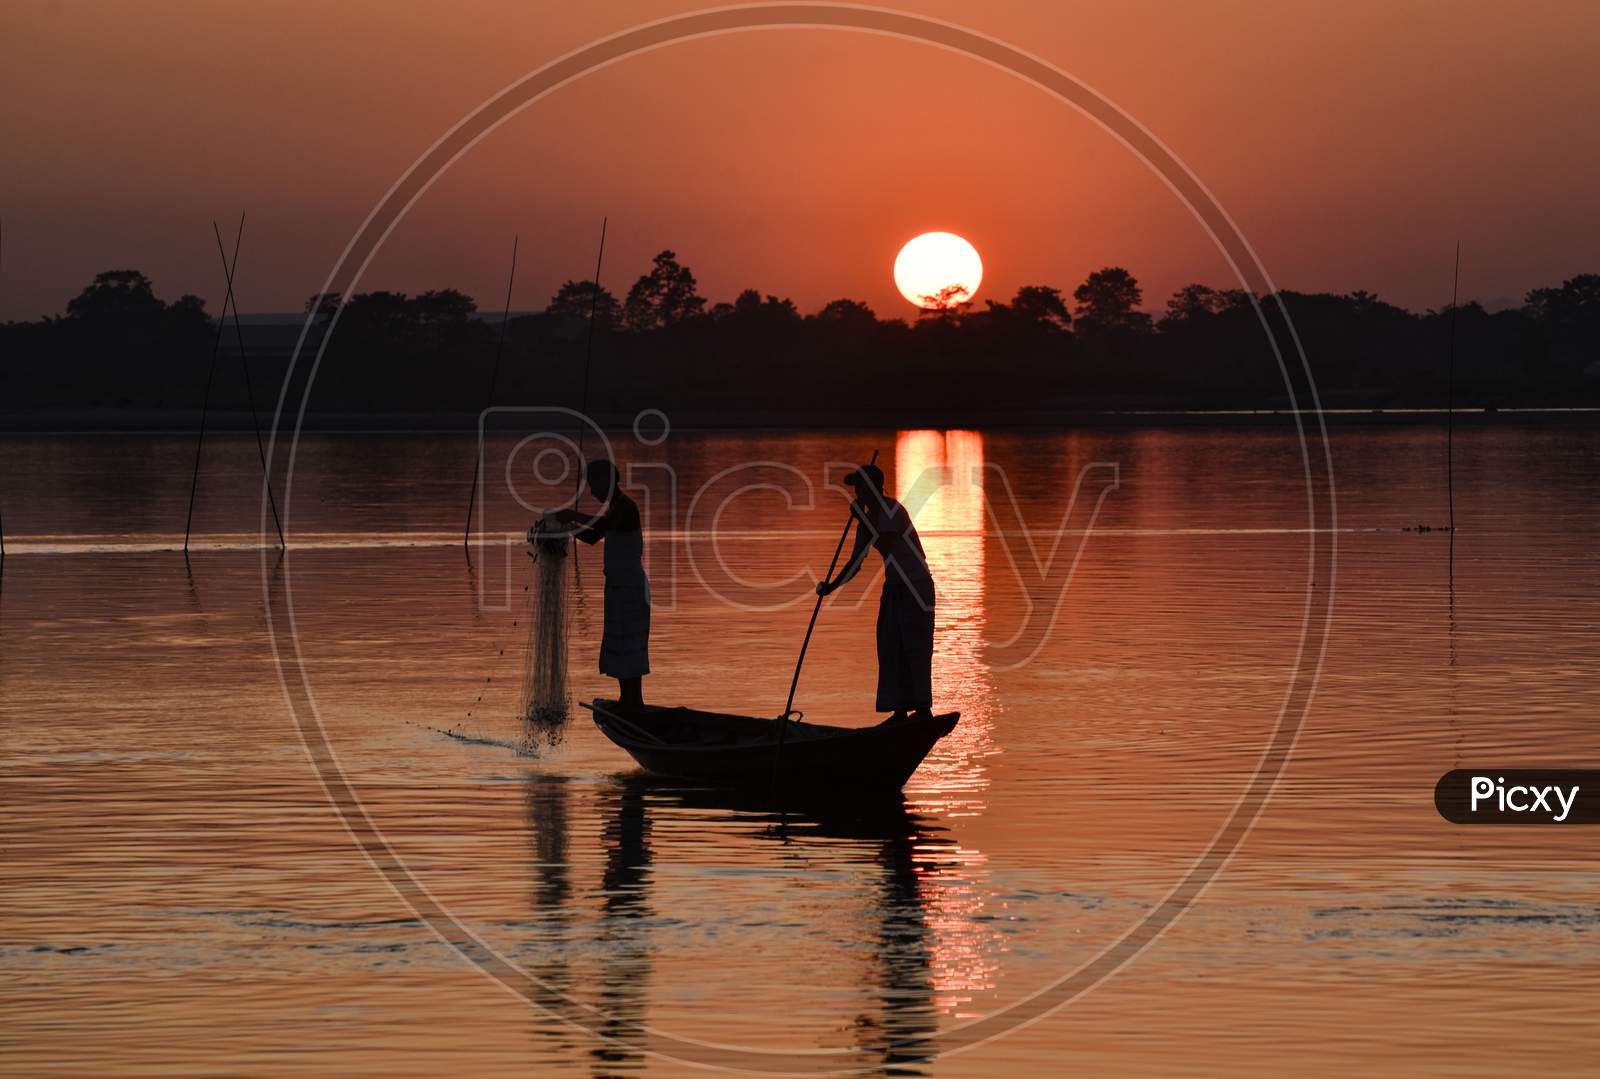 Indian Fishermen Fishing In Beki River During Sunset, At Sarbhog In Barpeta District Of Assam